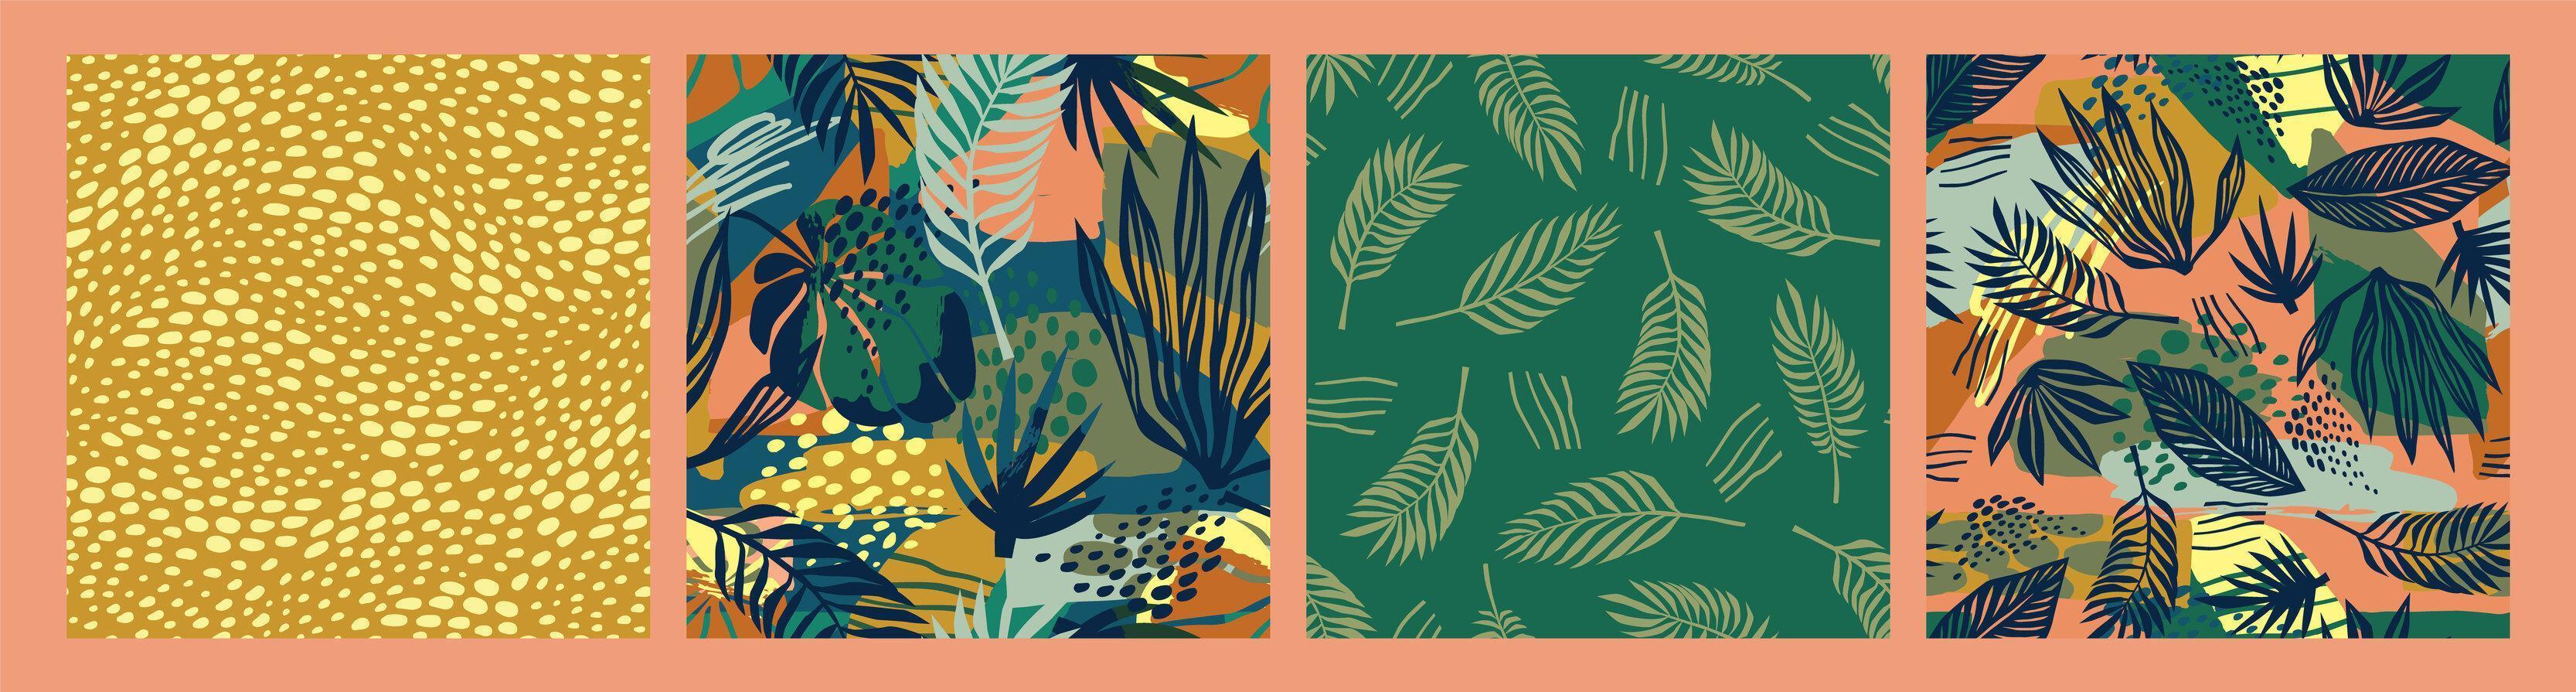 conjunto de patrones sin fisuras de arte abstracto con hojas tropicales. diseño exótico moderno vector